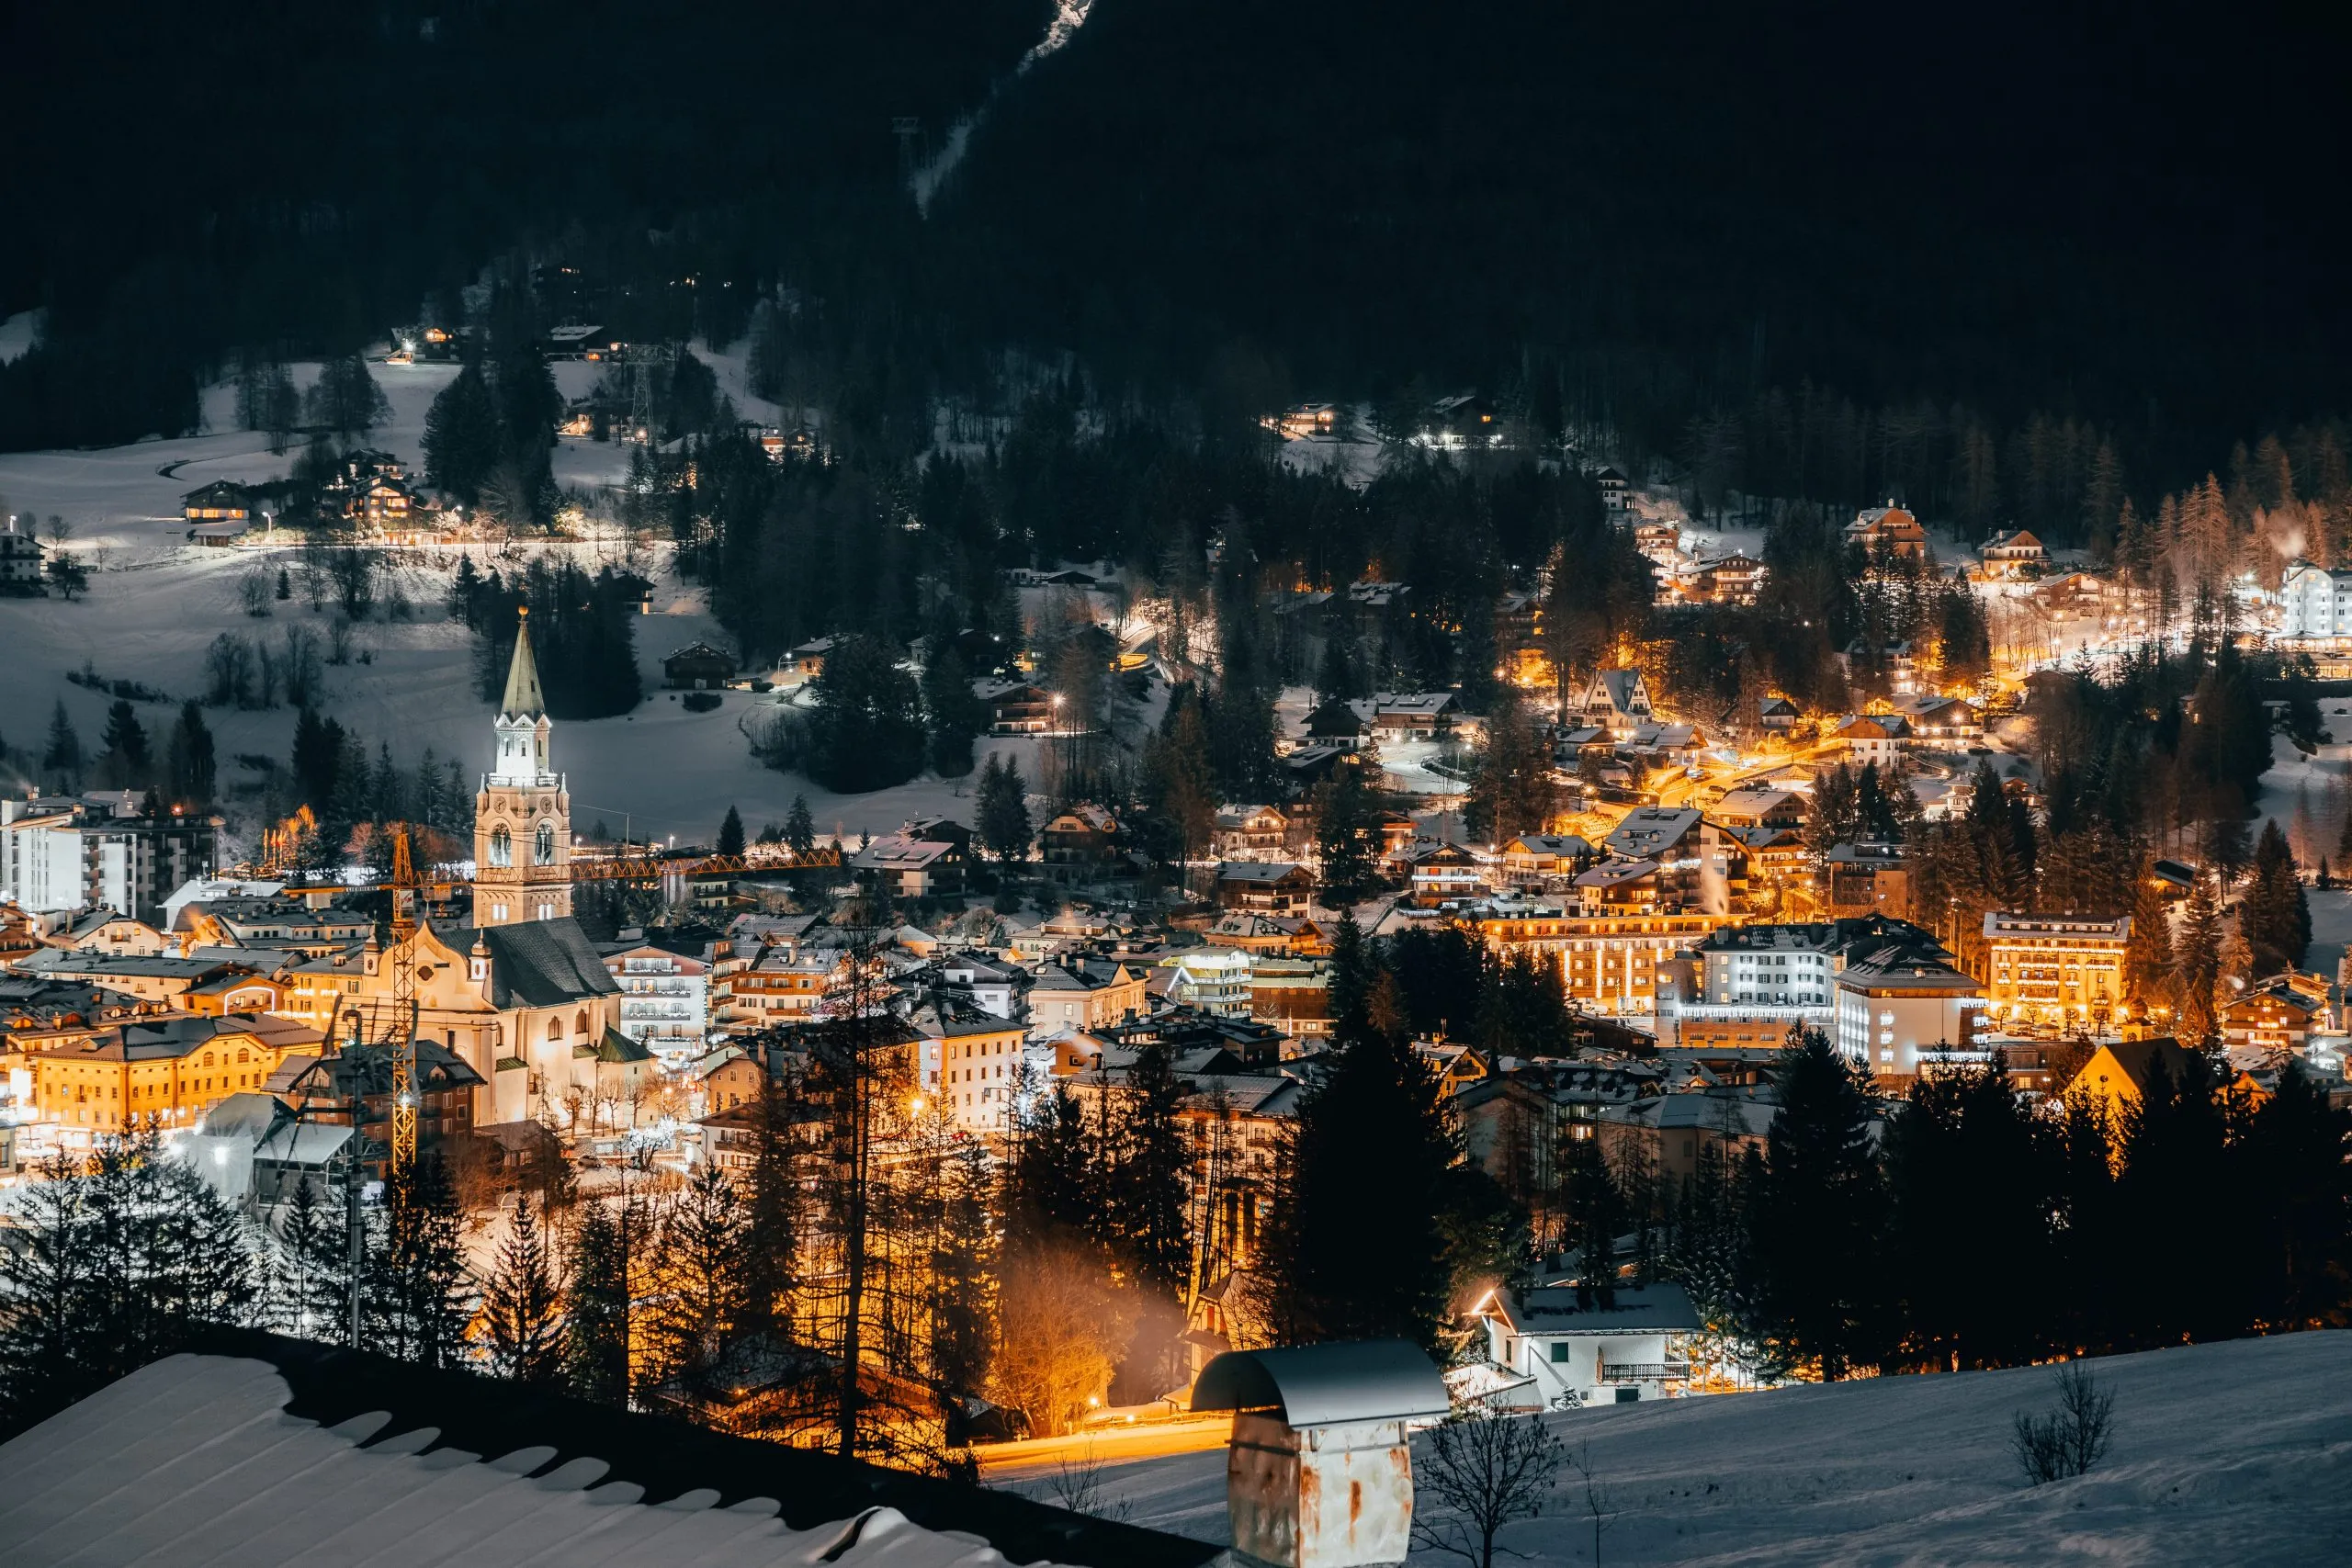 Cortina d'Ampezzo at night.